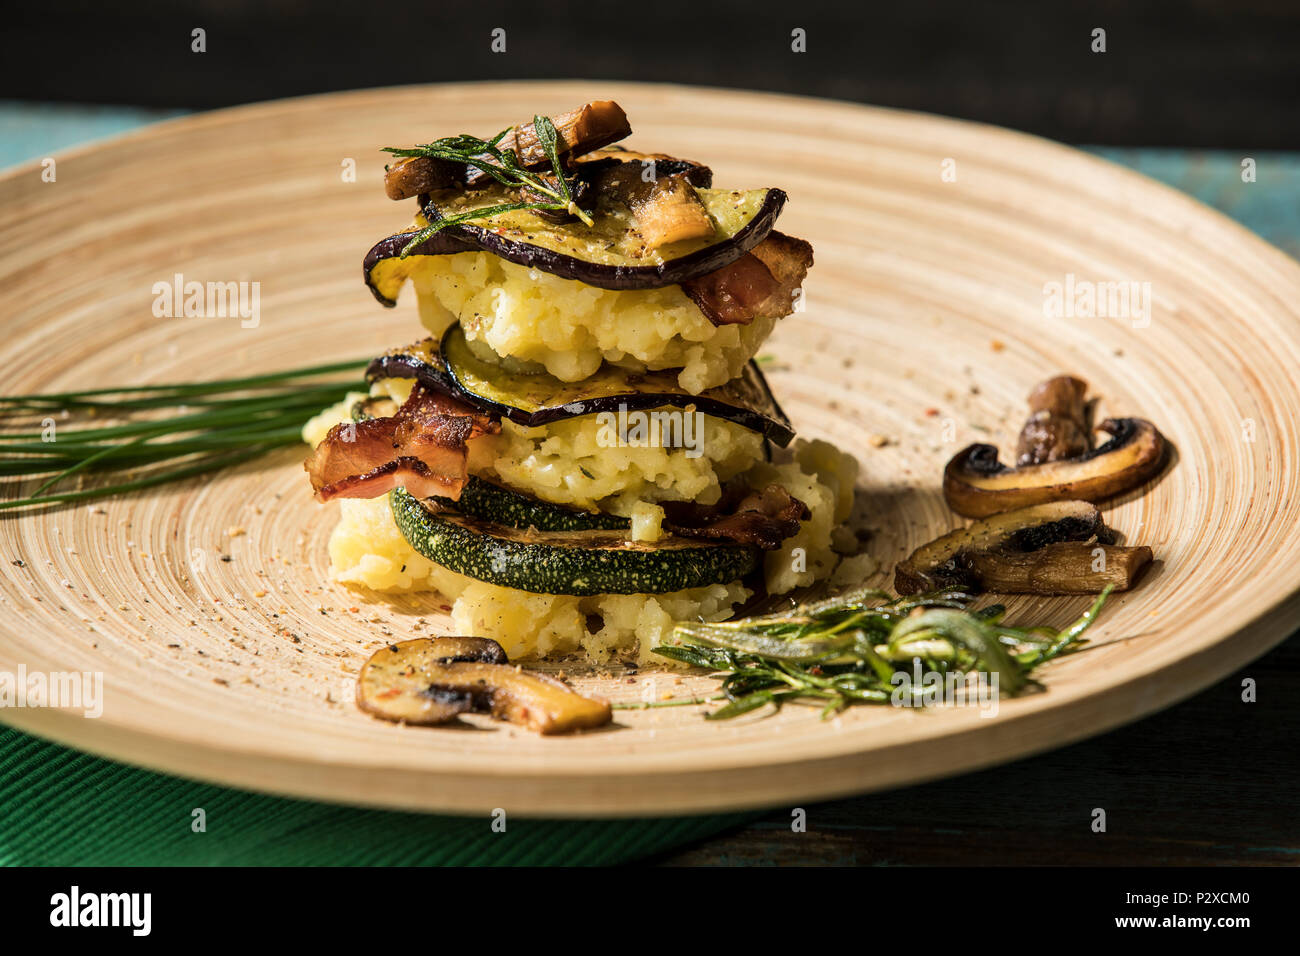 Schichtturm mit Stampfkartoffeln, Auberginen, Zucchini und champignon und Bacon, studio Foto Stock